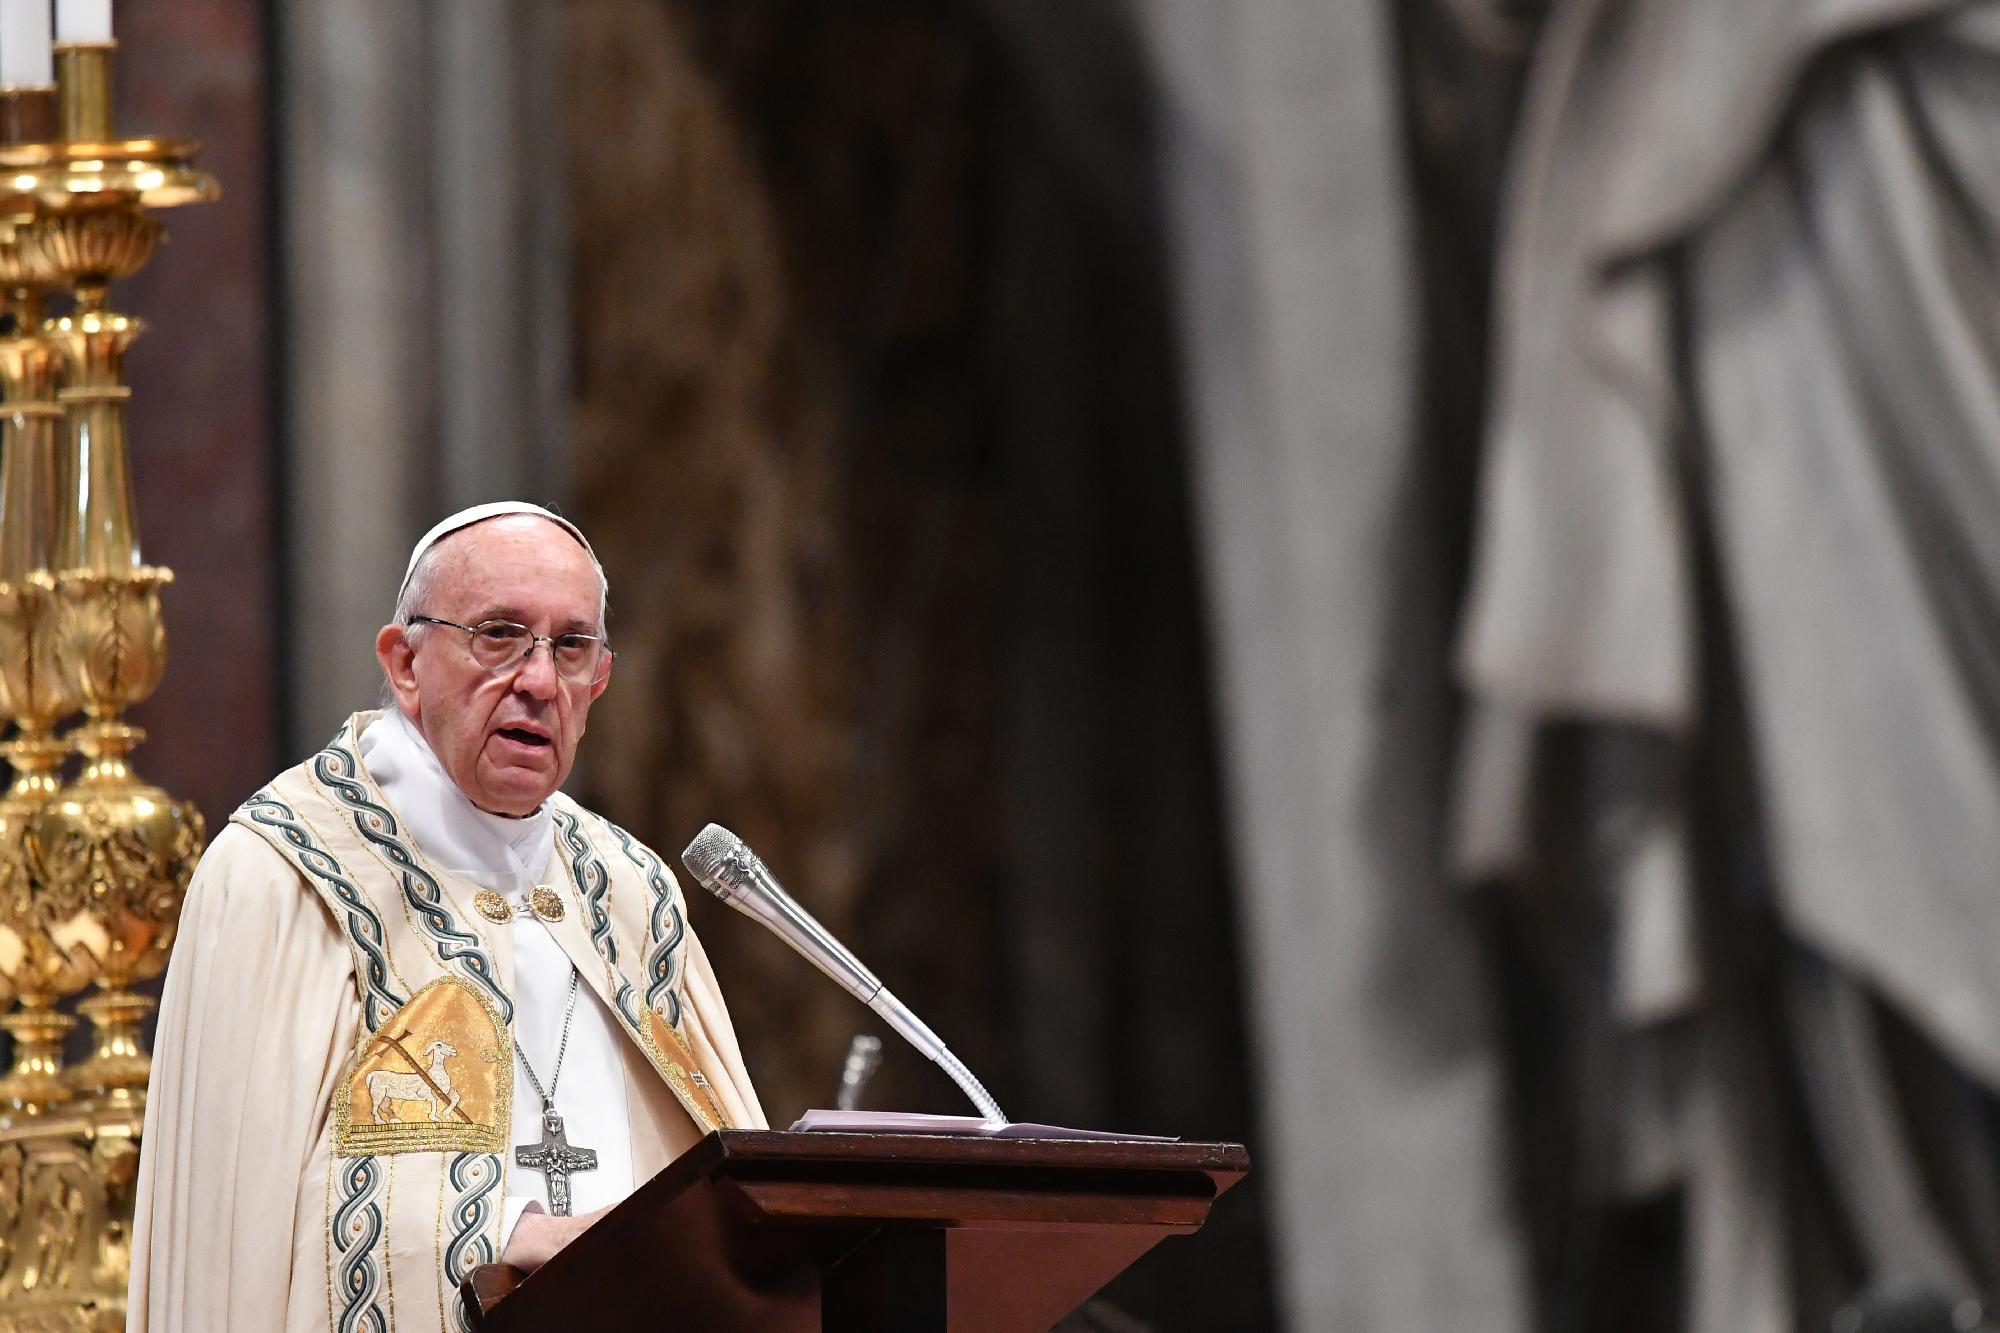  A pápa az újságírókért imádkozott